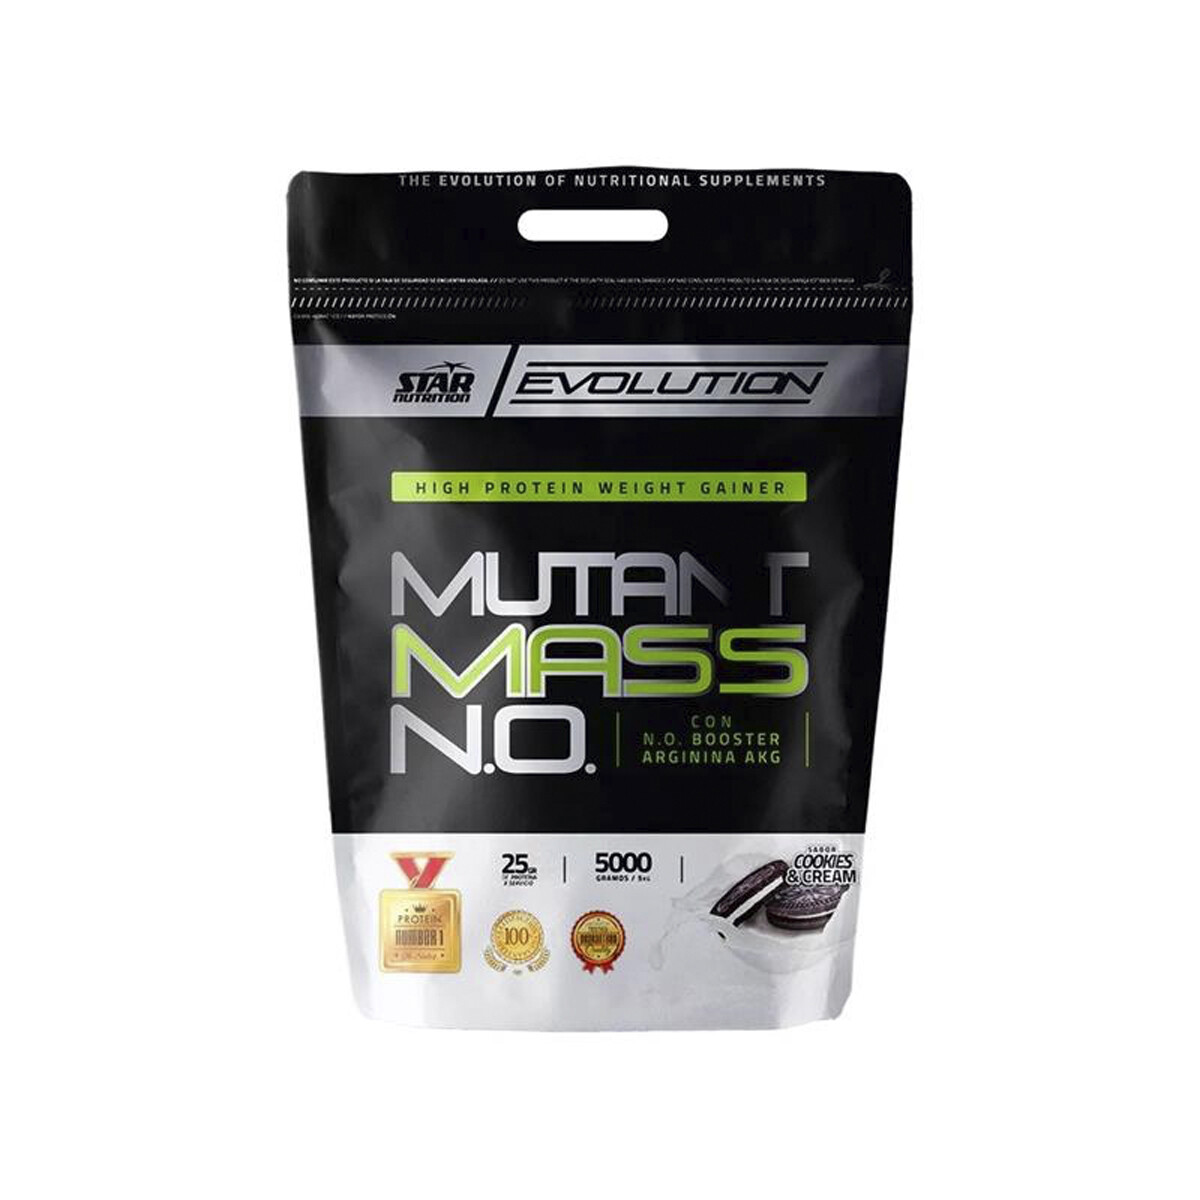 Star Nutrition Mutant Mass N.O 5KG - Cookies & Cream 